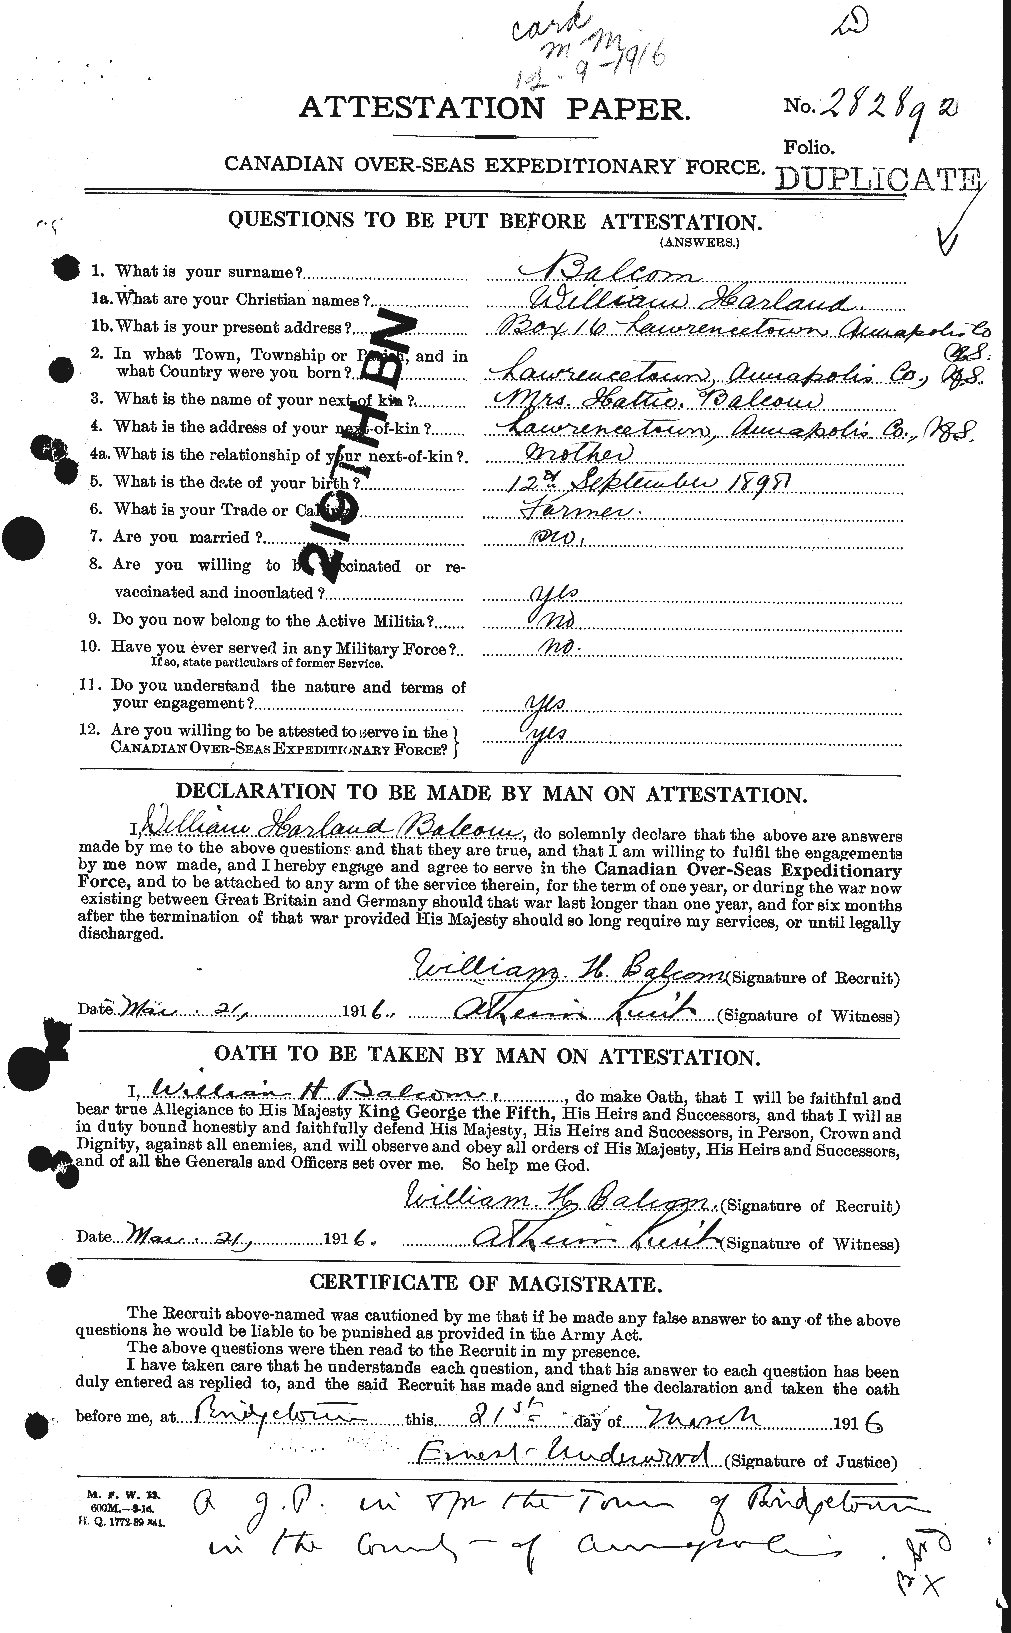 Dossiers du Personnel de la Première Guerre mondiale - CEC 225431a